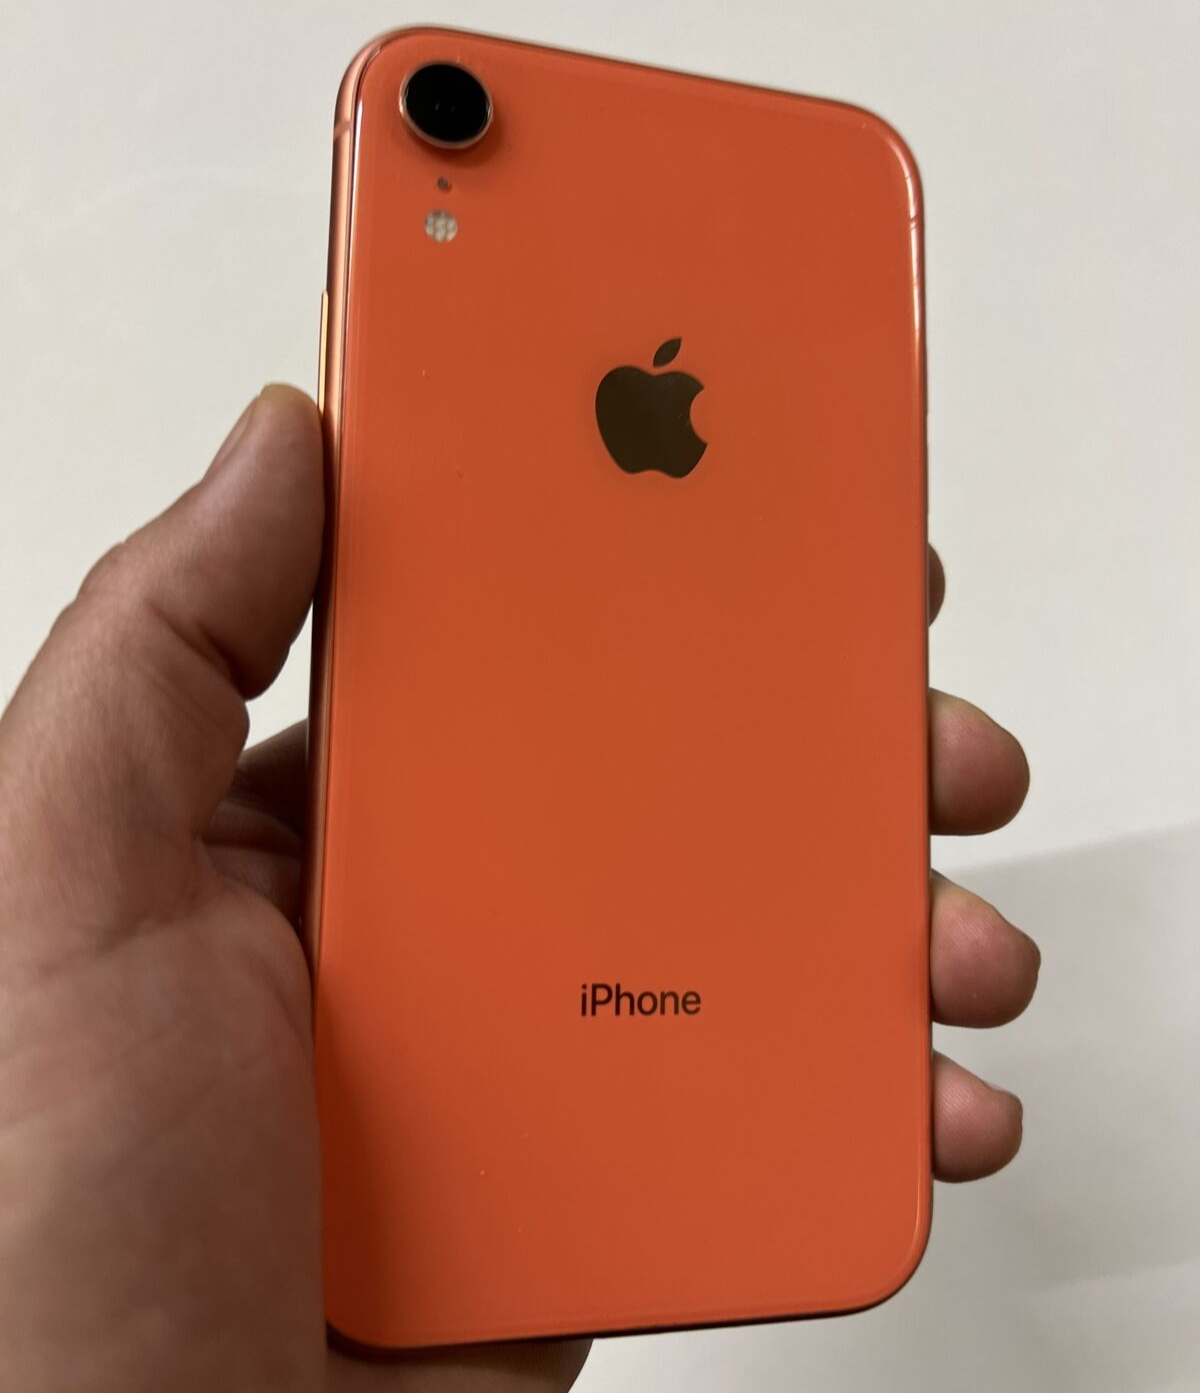 スマートフォン/携帯電話 スマートフォン本体 Apple iPhone XR - 64GB - Coral (Unlocked) A1984 (CDMA + GSM) for 